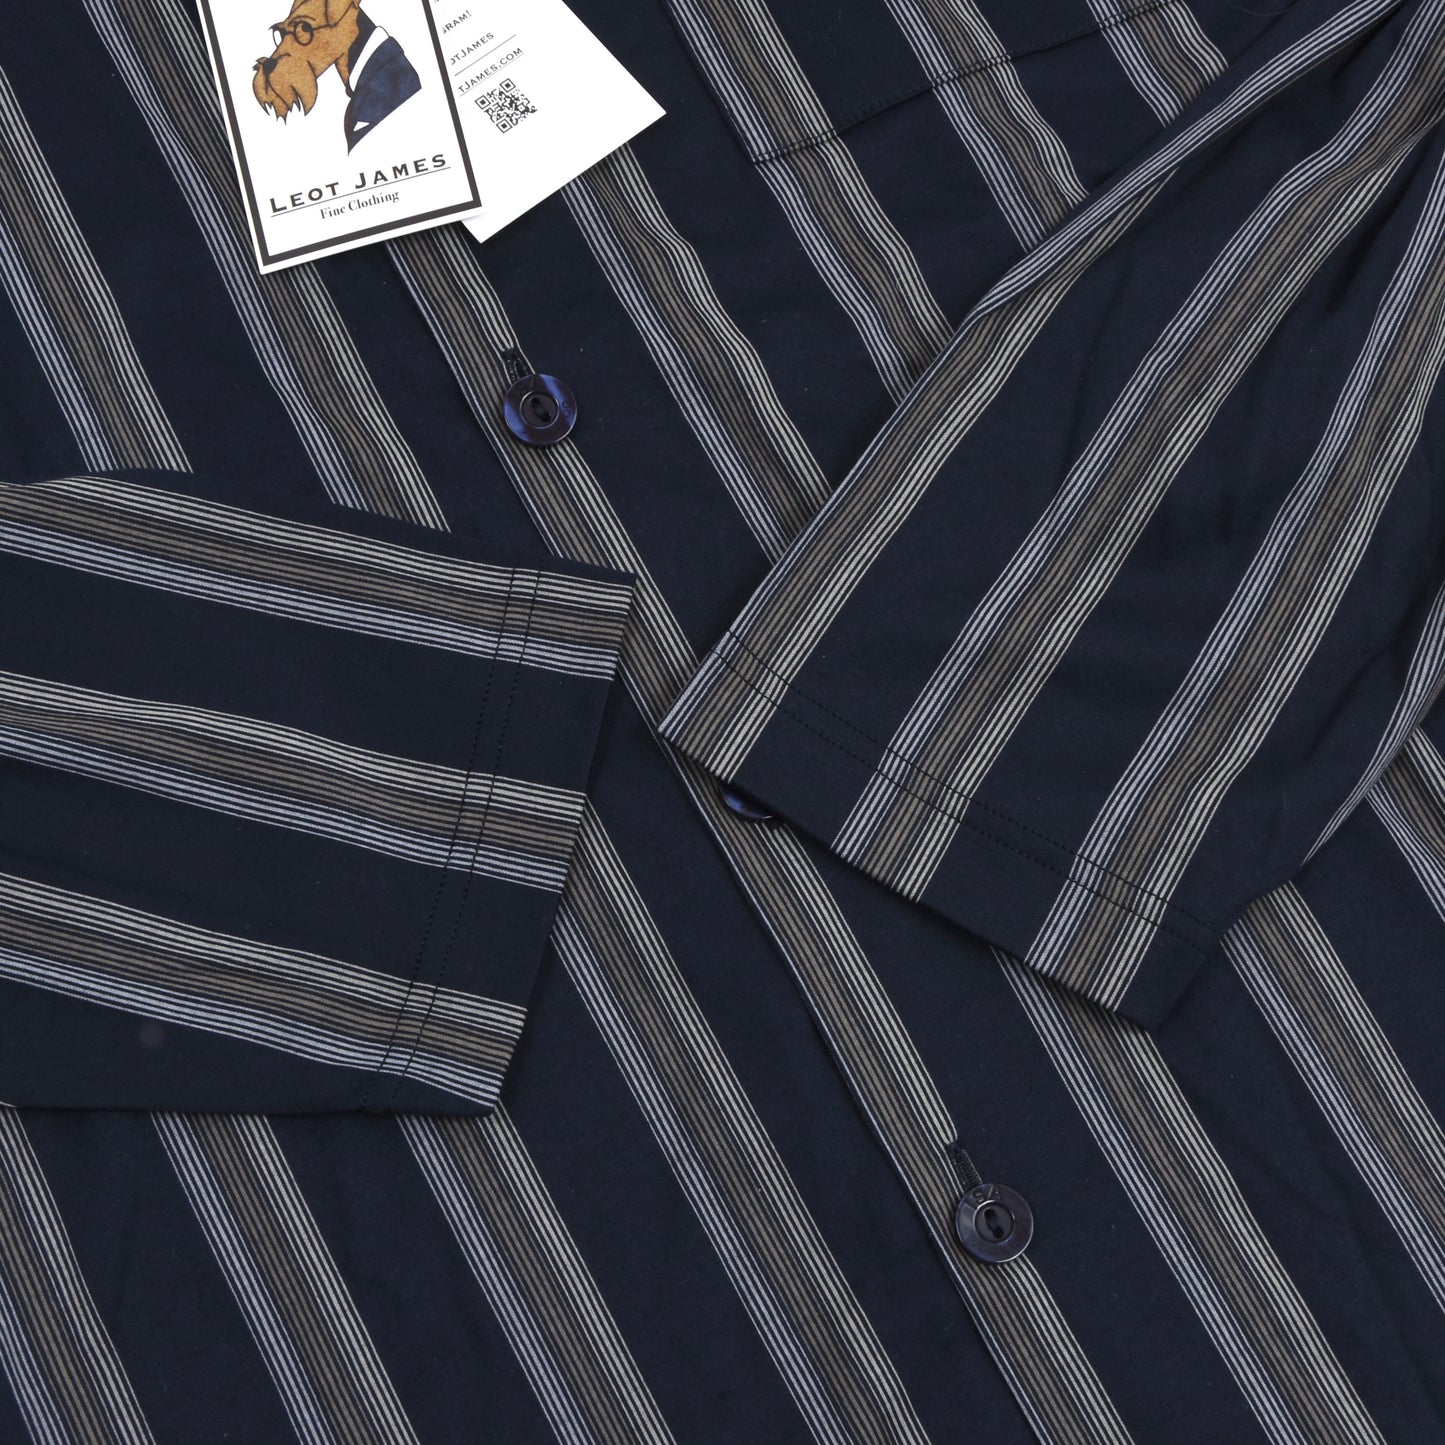 ISA Bodywear Schlafanzug aus merzerisierter Baumwolle Größe L - Navy Stripes